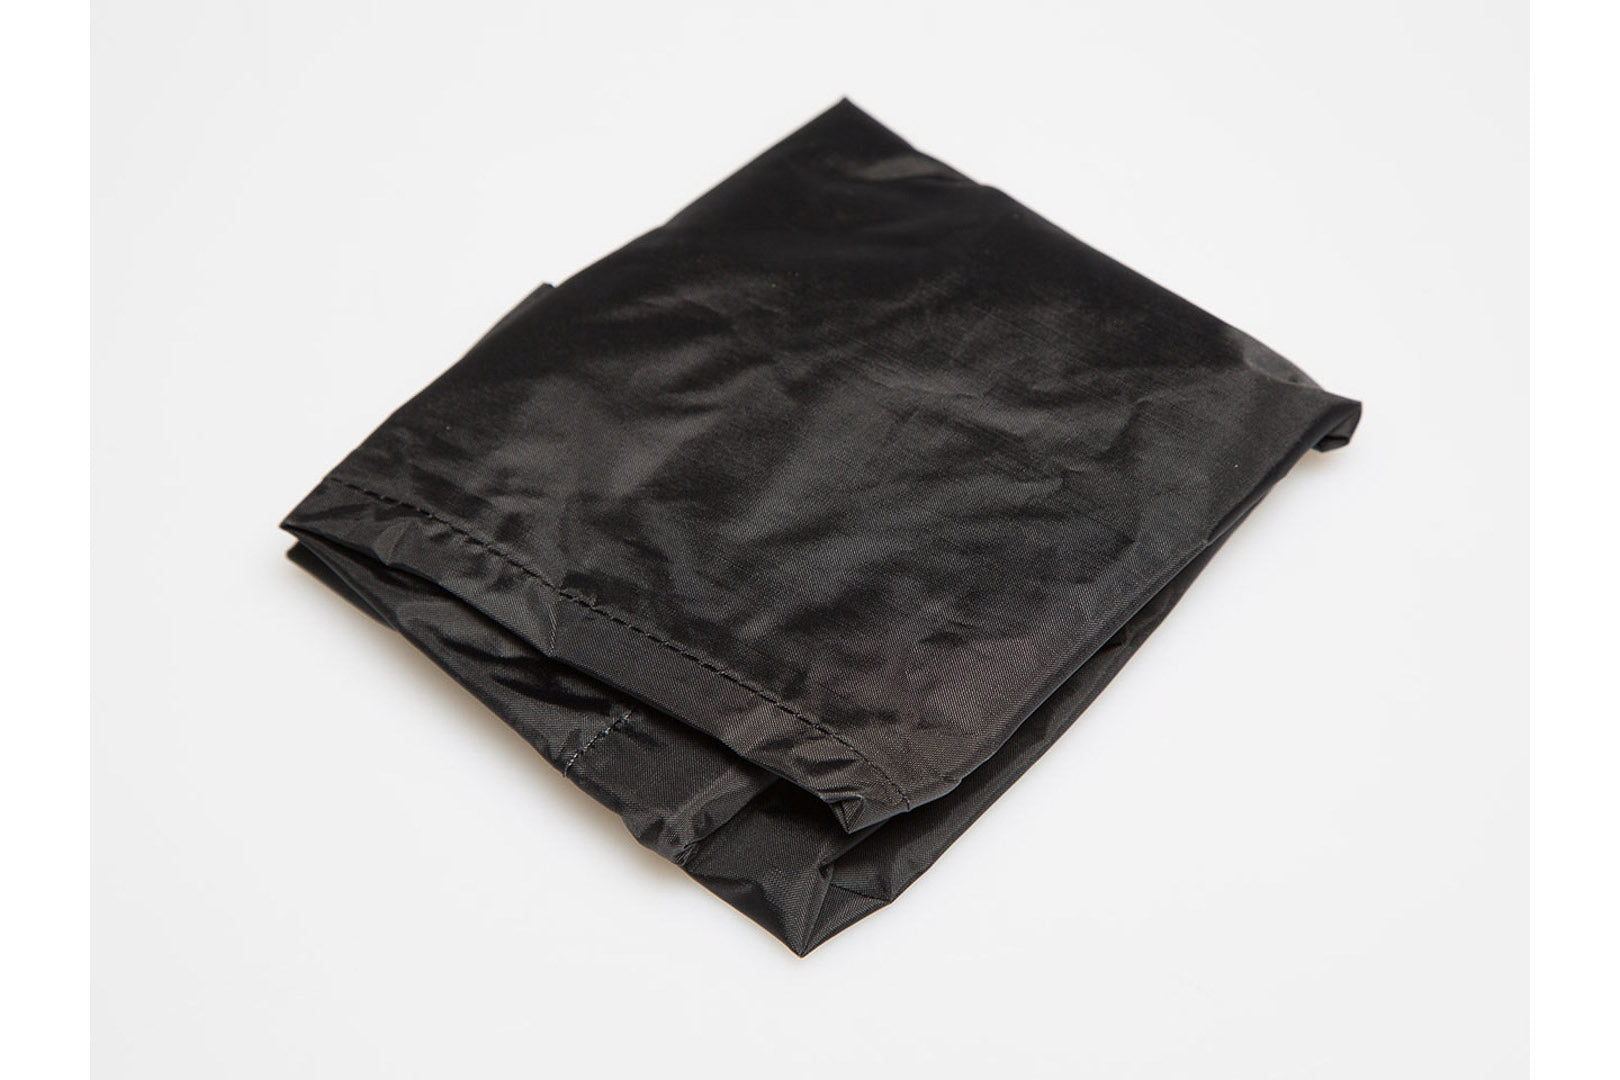 Waterproof inner bag Enduro Lite Waterproof inner bag Enduro Lite